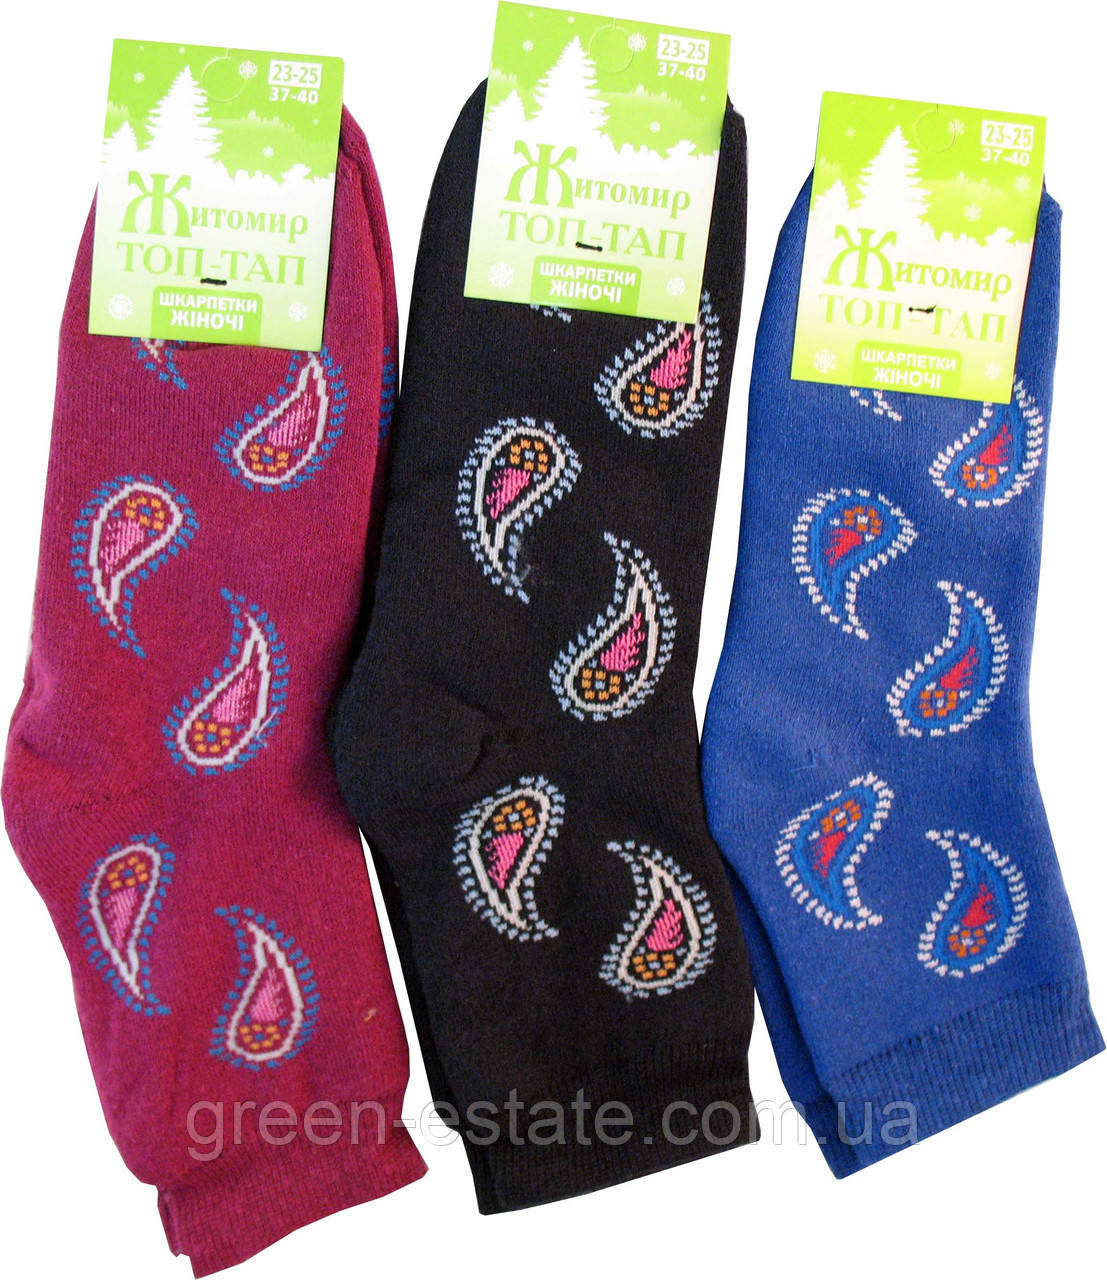 Шкарпетки жіночі махрові Крапля асорті 23-25 р. (37-40)